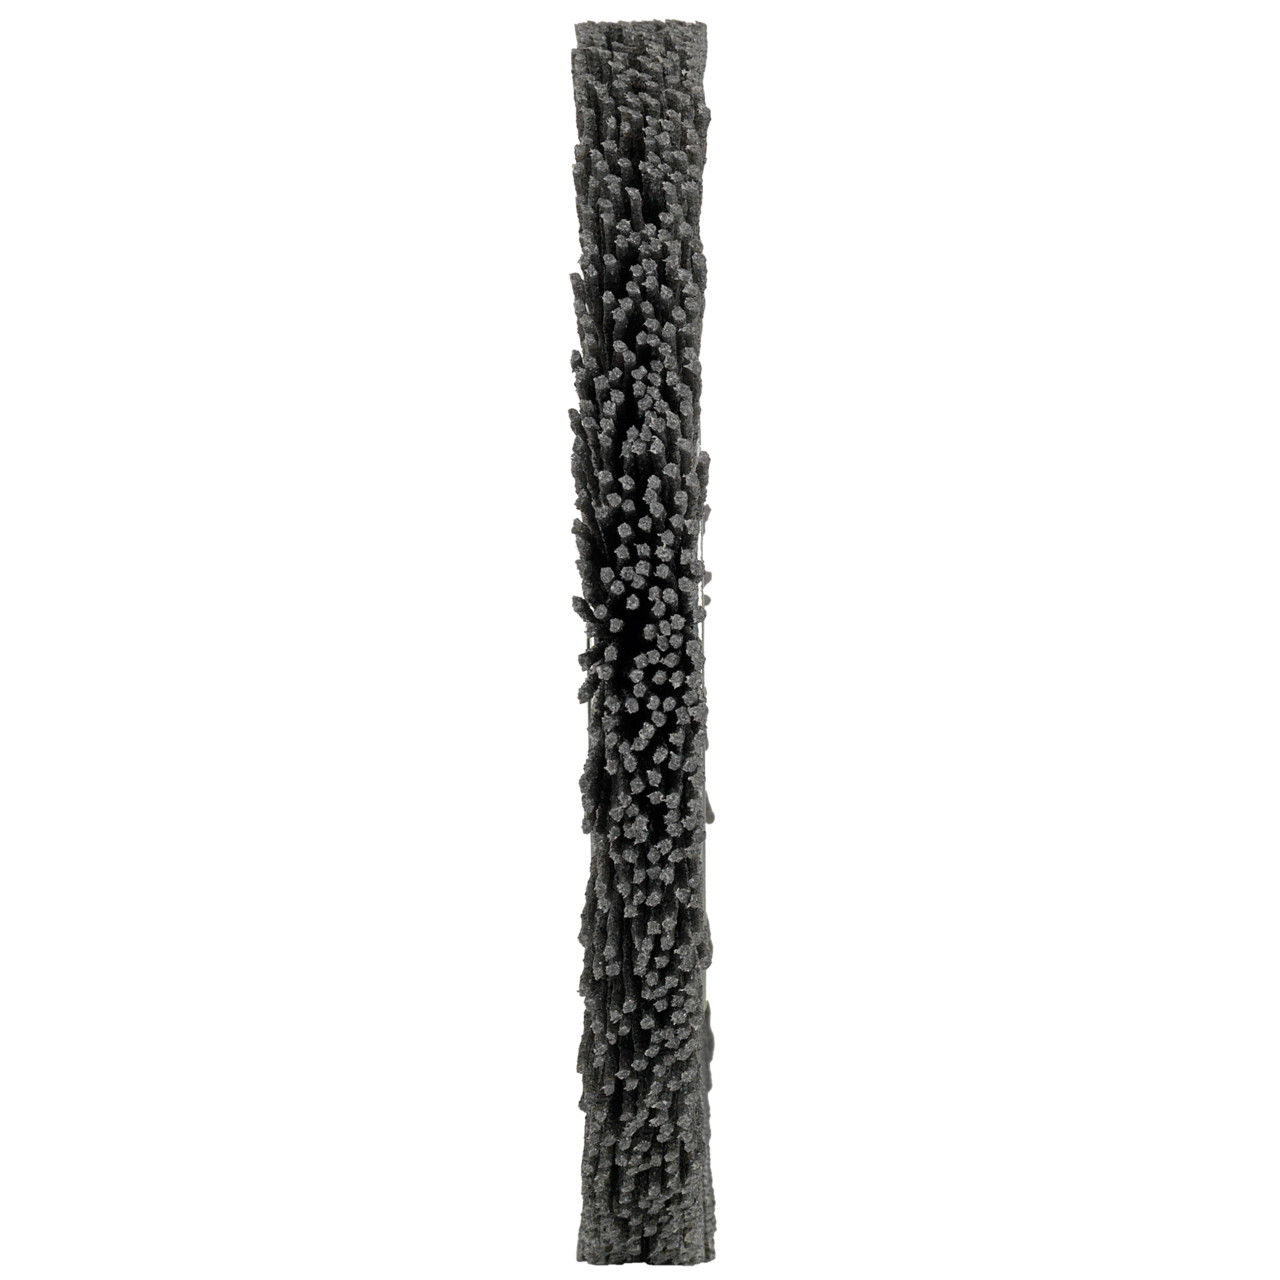 Spazzole rotonde Tyrolit DxLxH 200x13x43x50.8 Per uso universale, forma: 1RDK - (spazzole rotonde), Art. 227435